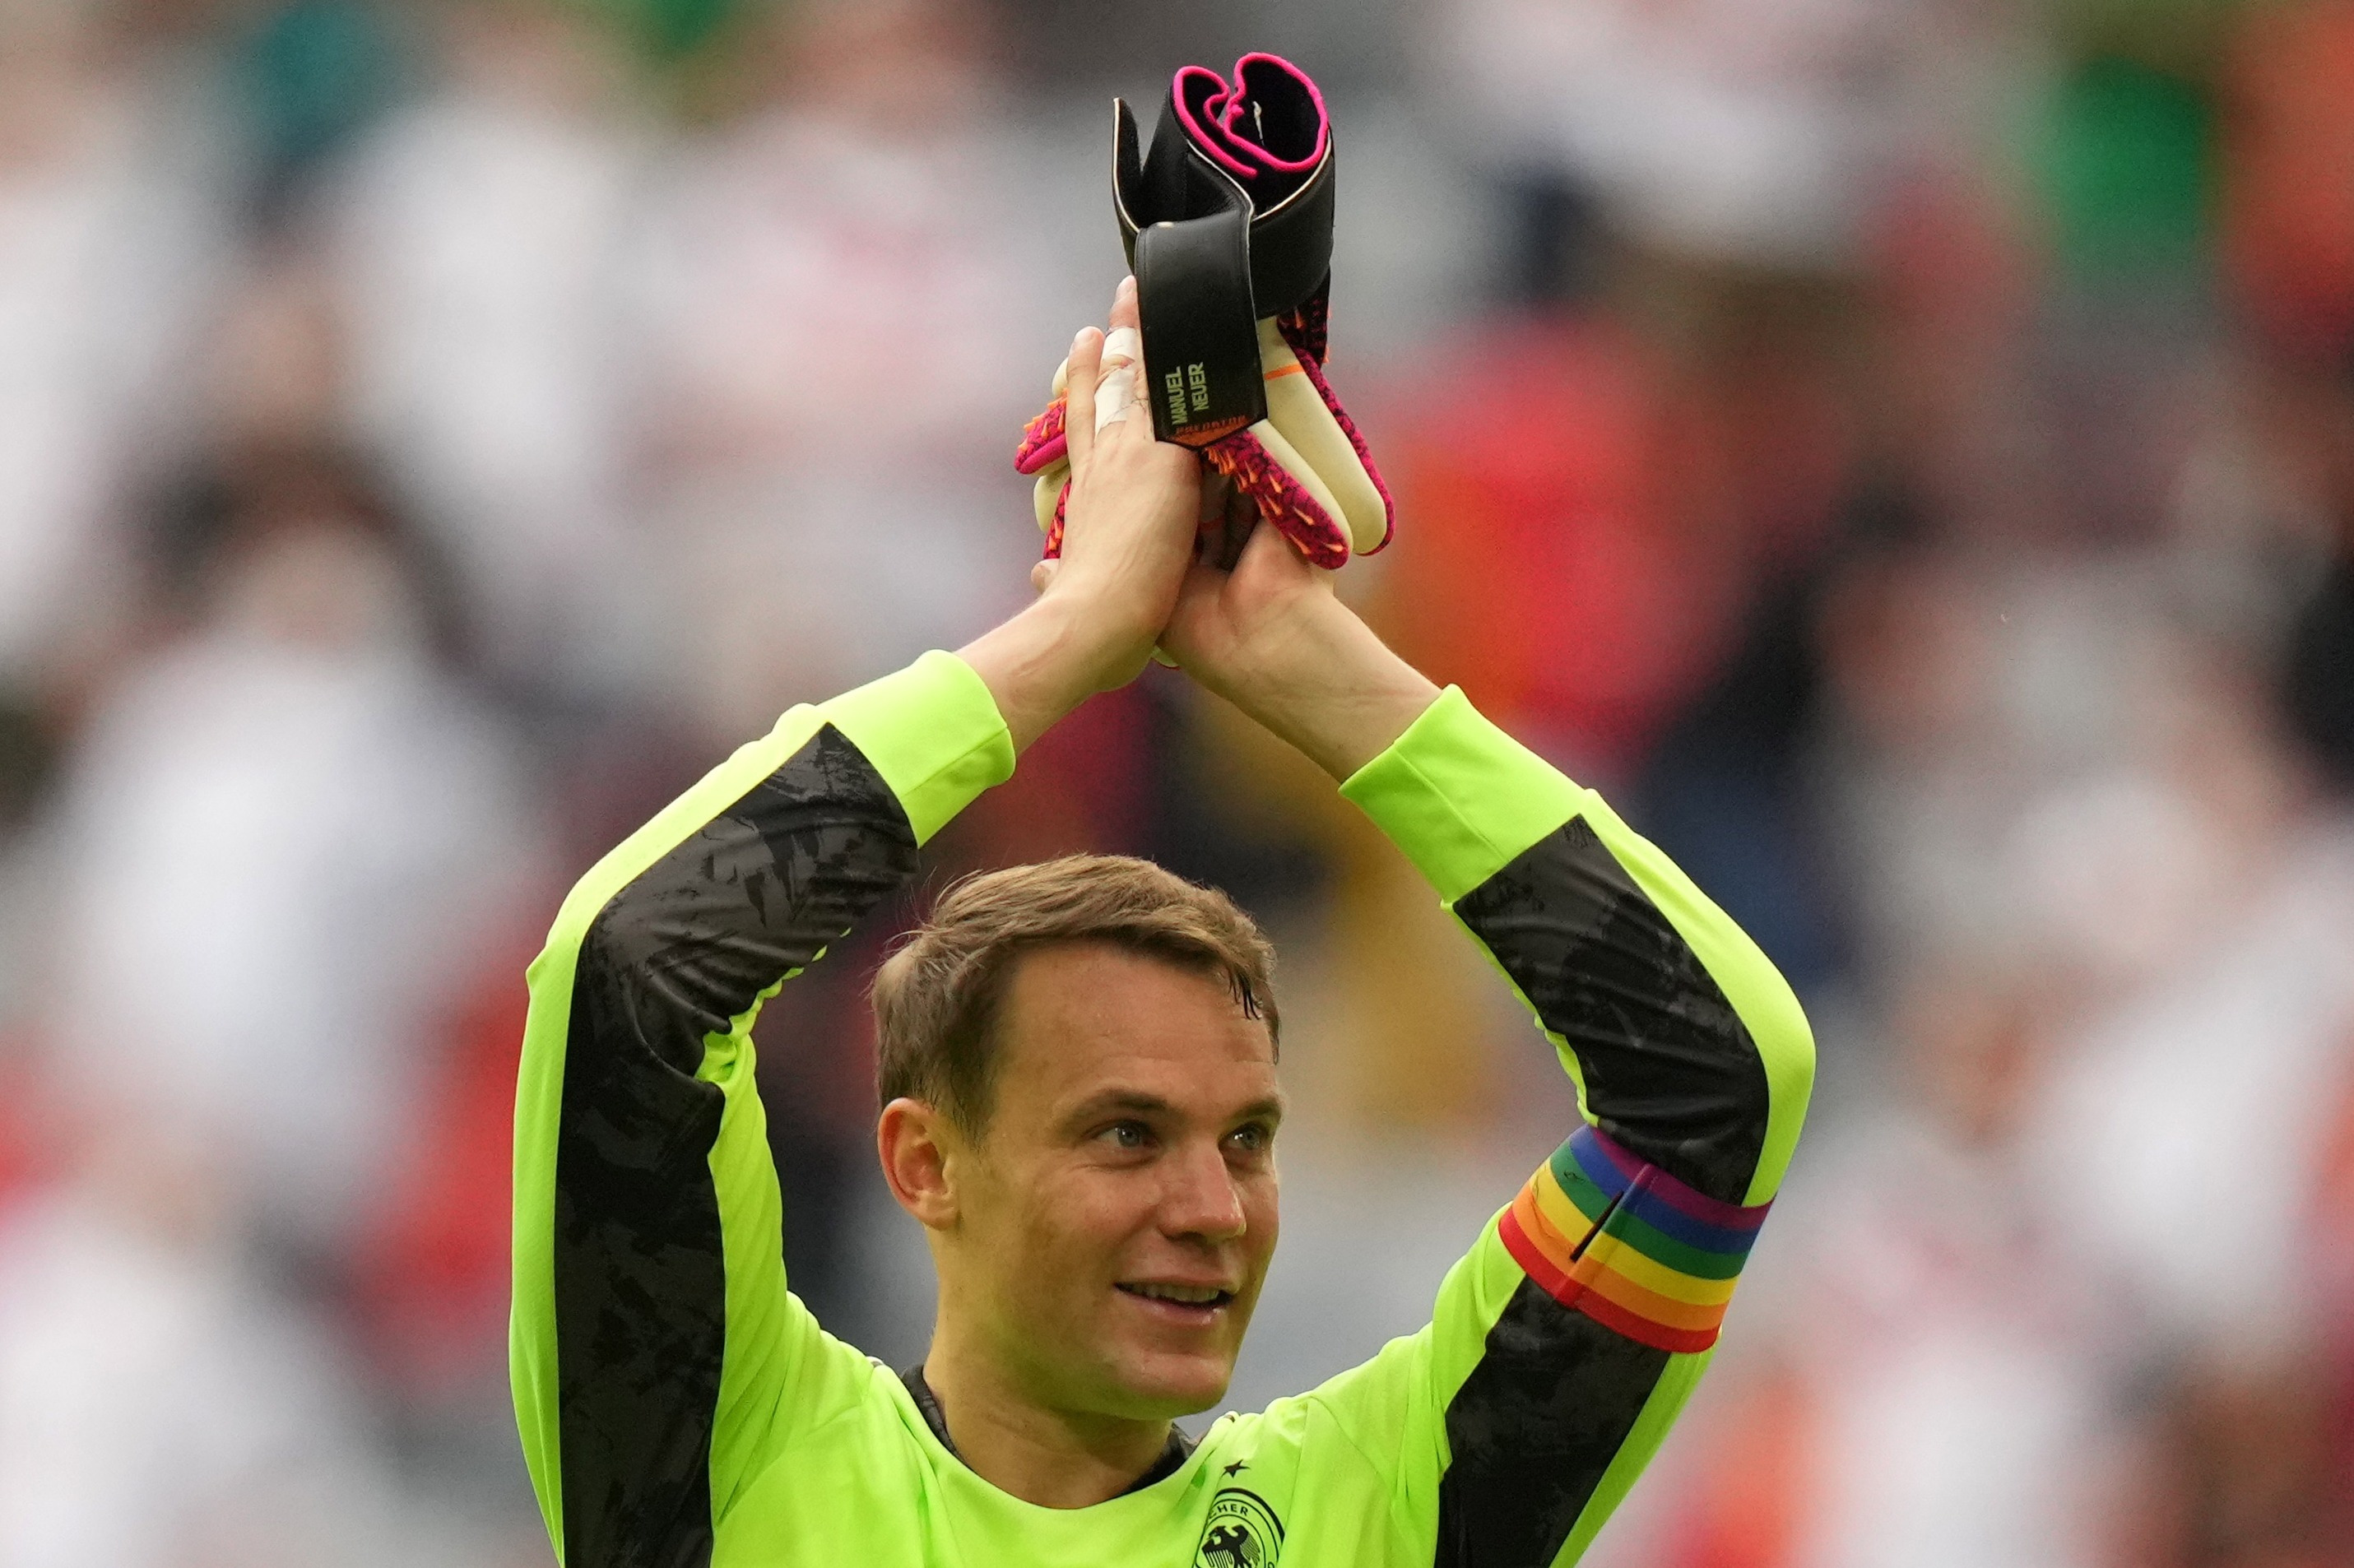 El capitán de la selección alemana de fútbol lució un brazalete arcoiris